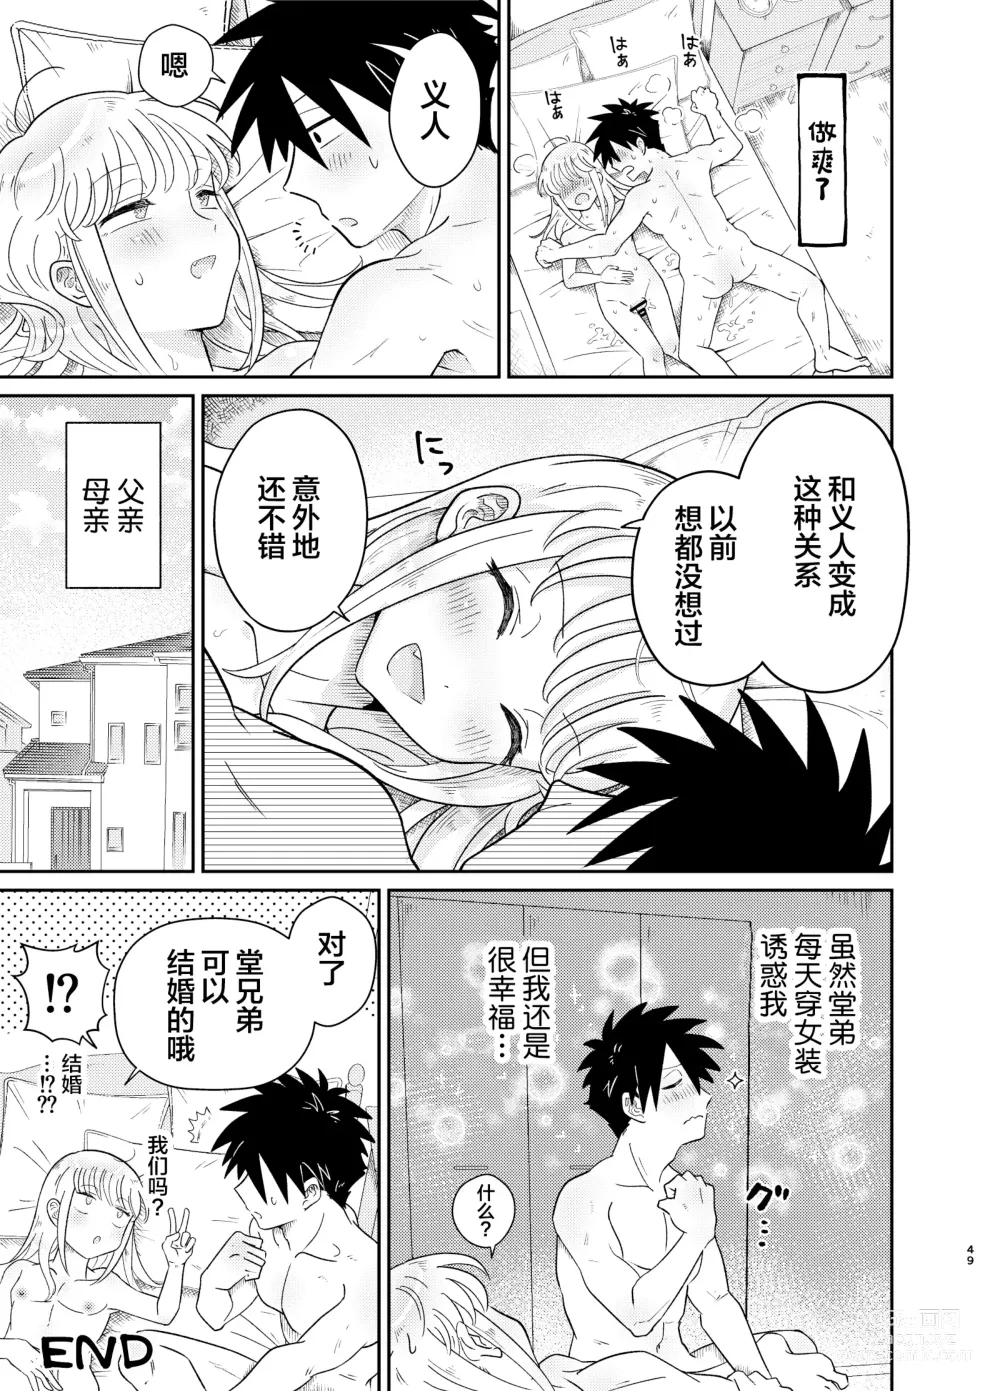 Page 49 of doujinshi Mechakucha Kawaikute Ecchi na Itoko wa Suki desu ka?